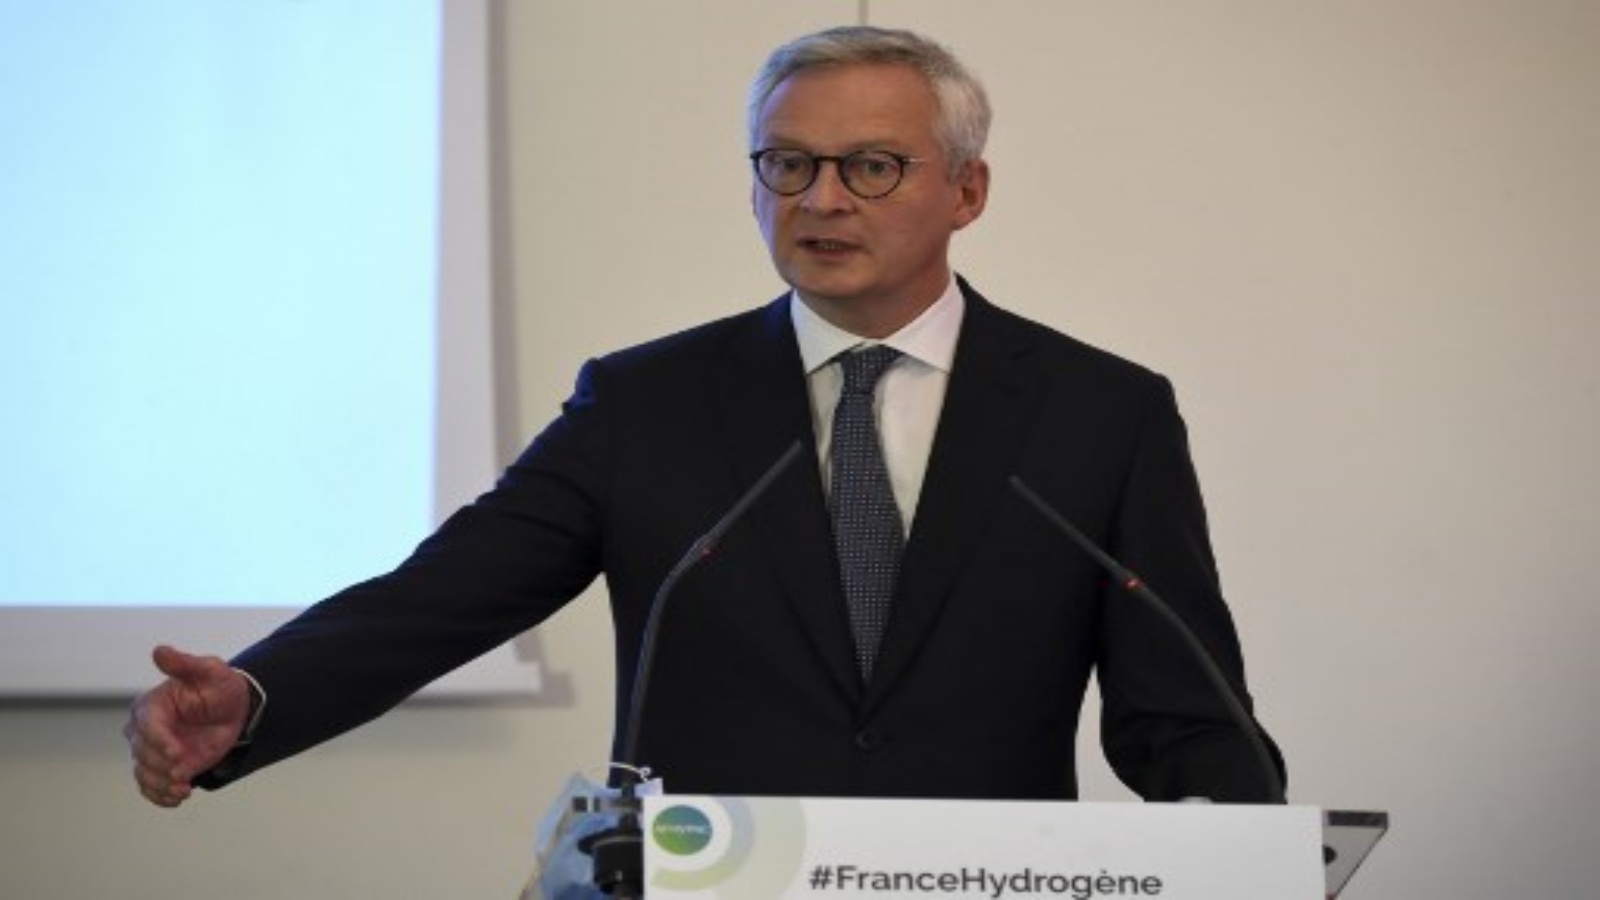 وزير المالية والاقتصاد الفرنسي برونو لو مير يعرض استراتيجية الهيدروجين الفرنسية في باريس في 8 سبتمبر 2020.